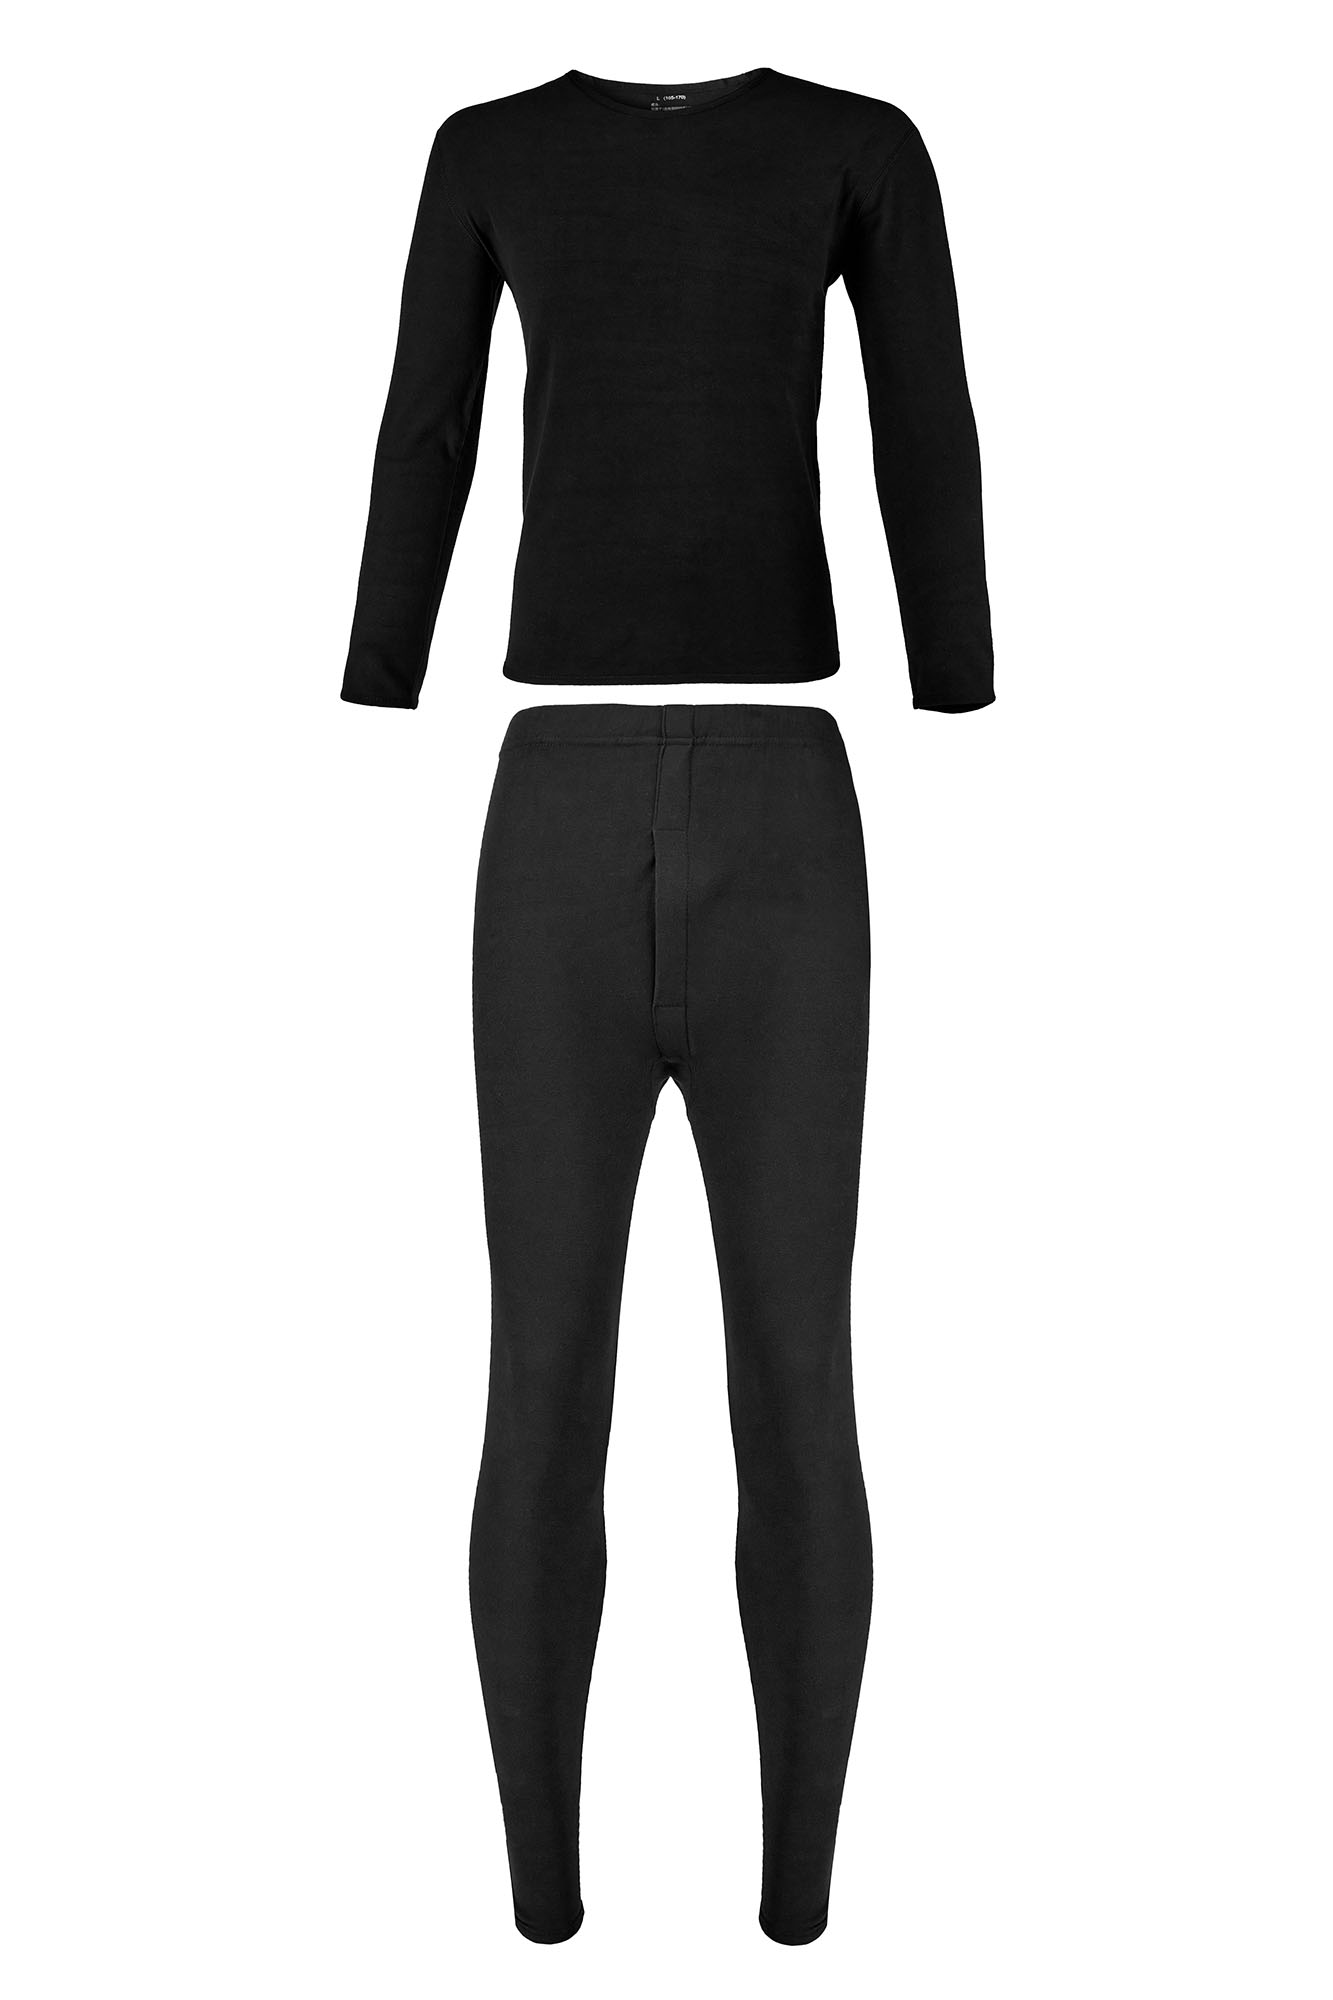 wXw-Artic-Sullivan Thermal Fleece Inner Wear - WorkXwear